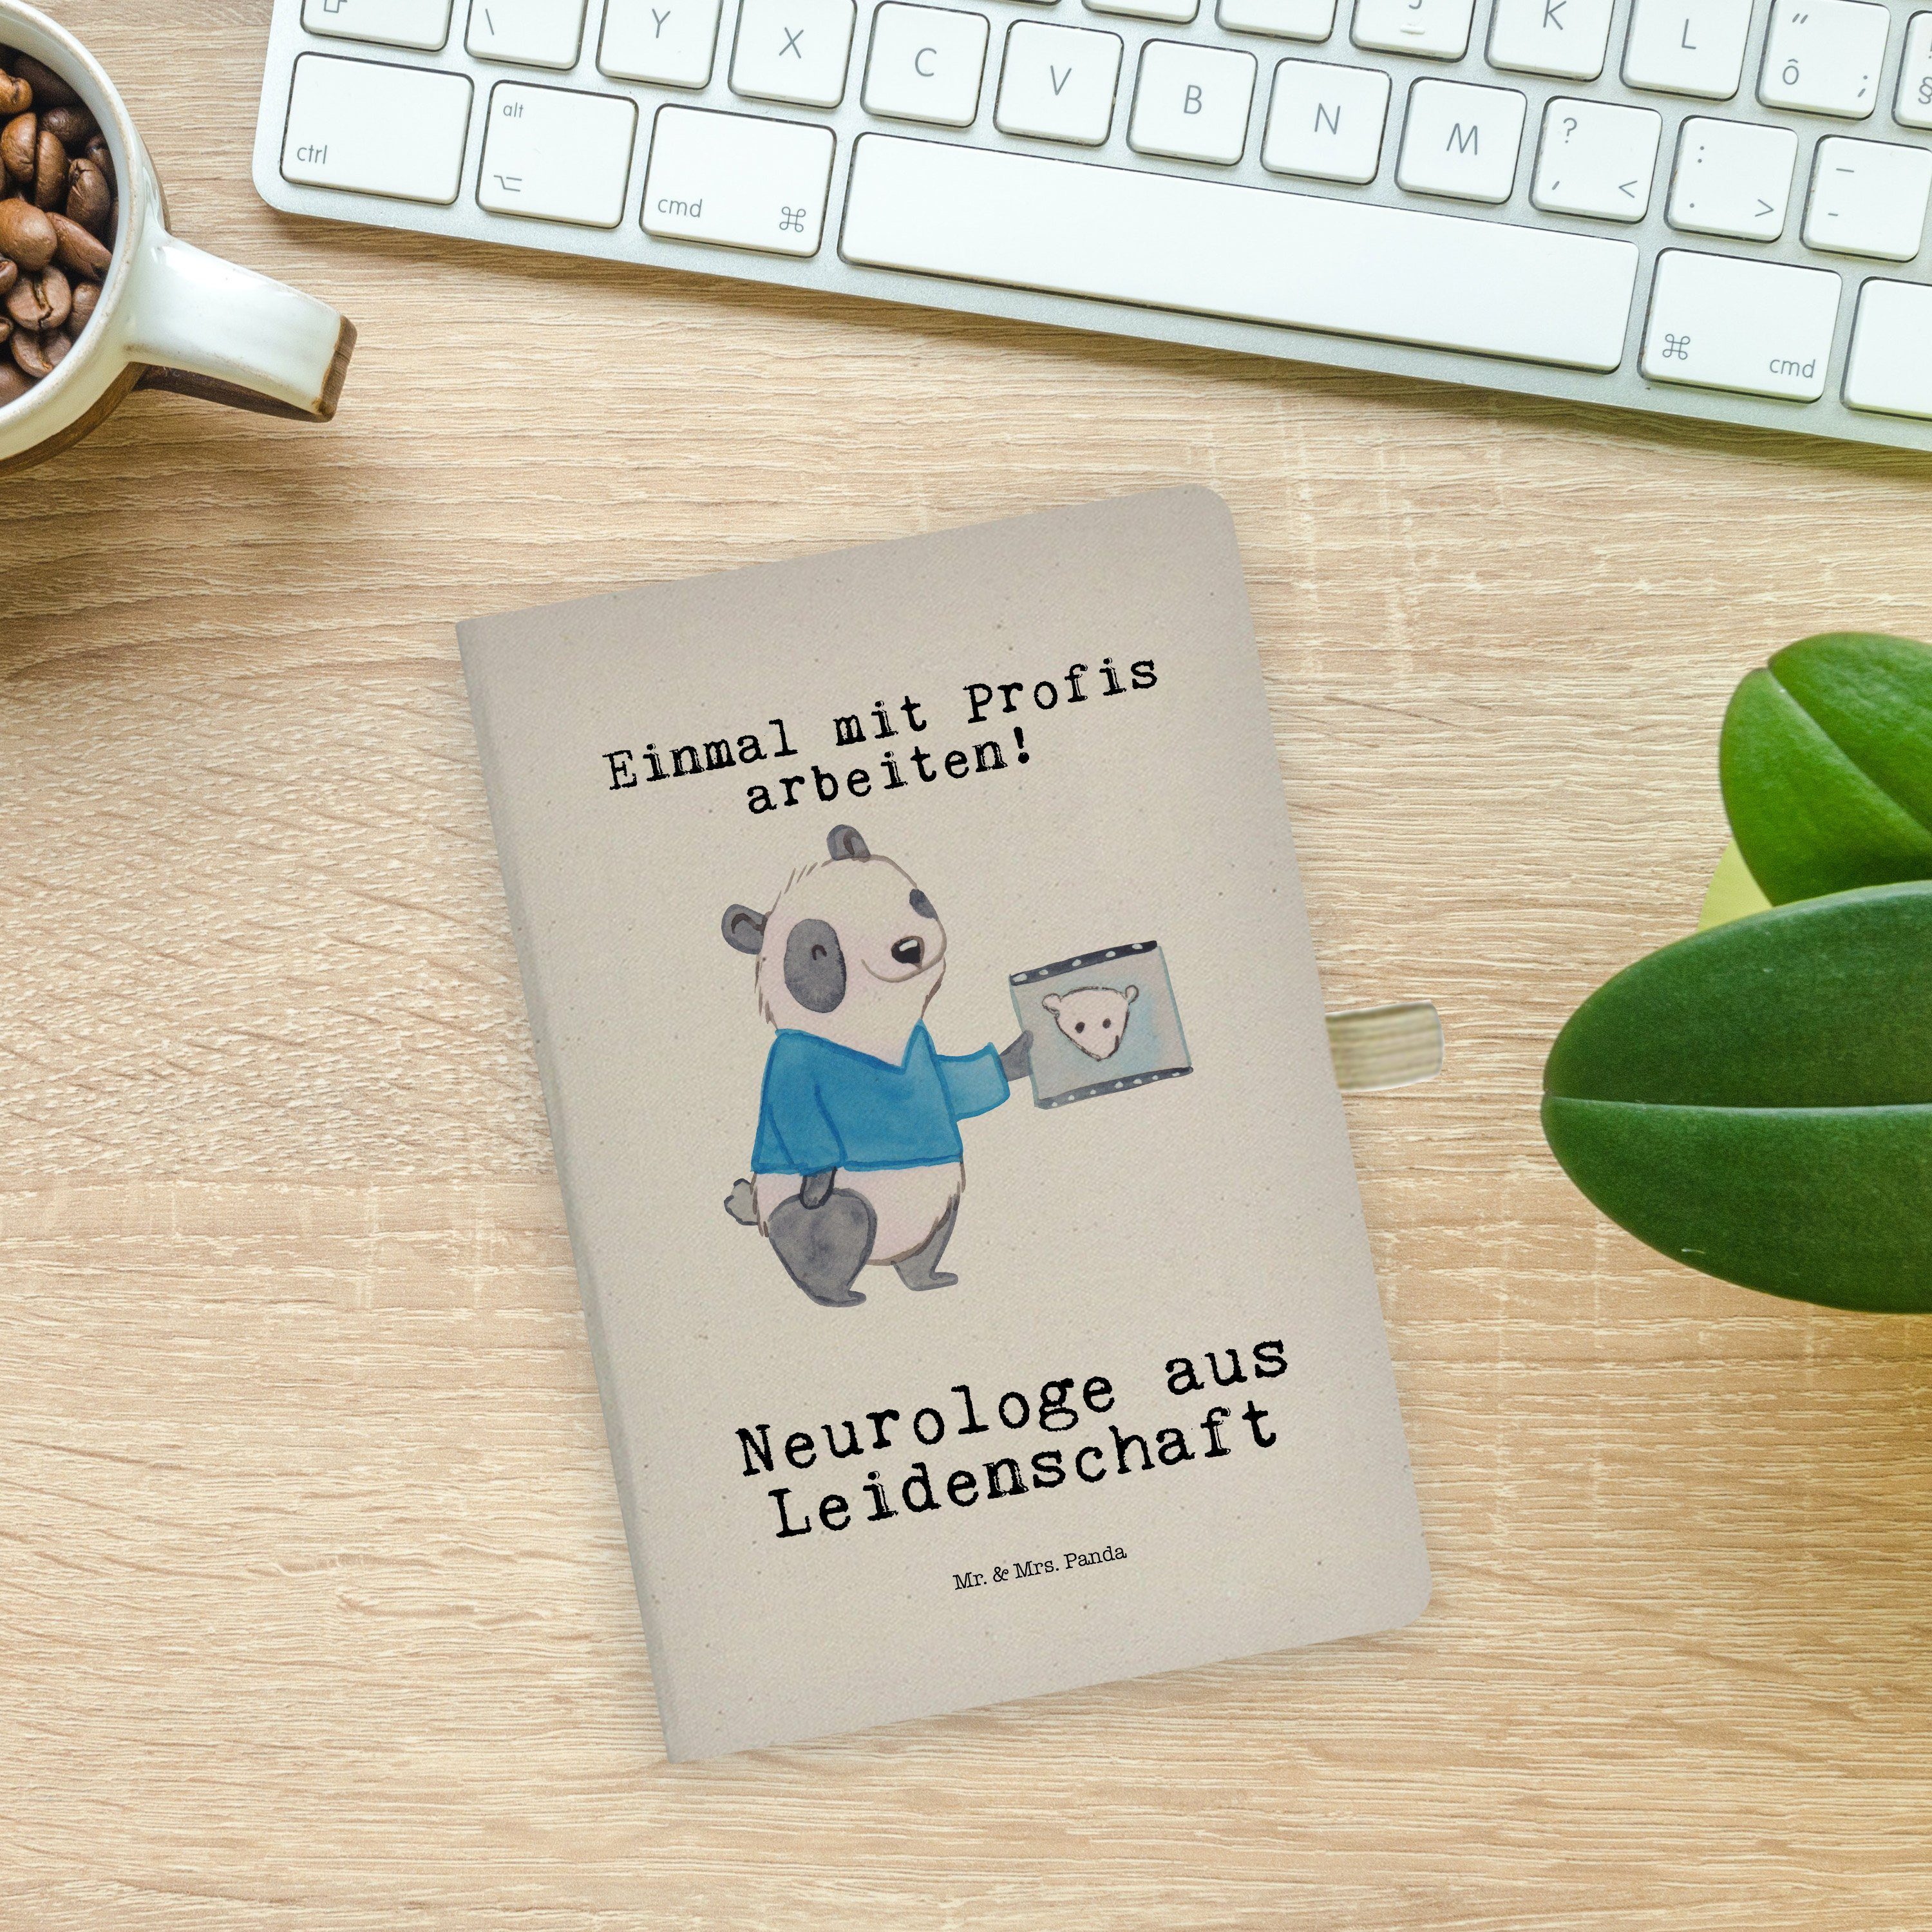 Notizbuch Journal, & Leidenschaft Ausbild Mr. aus Neurologe Mrs. - & Panda - Mr. Mrs. Panda Geschenk, Transparent